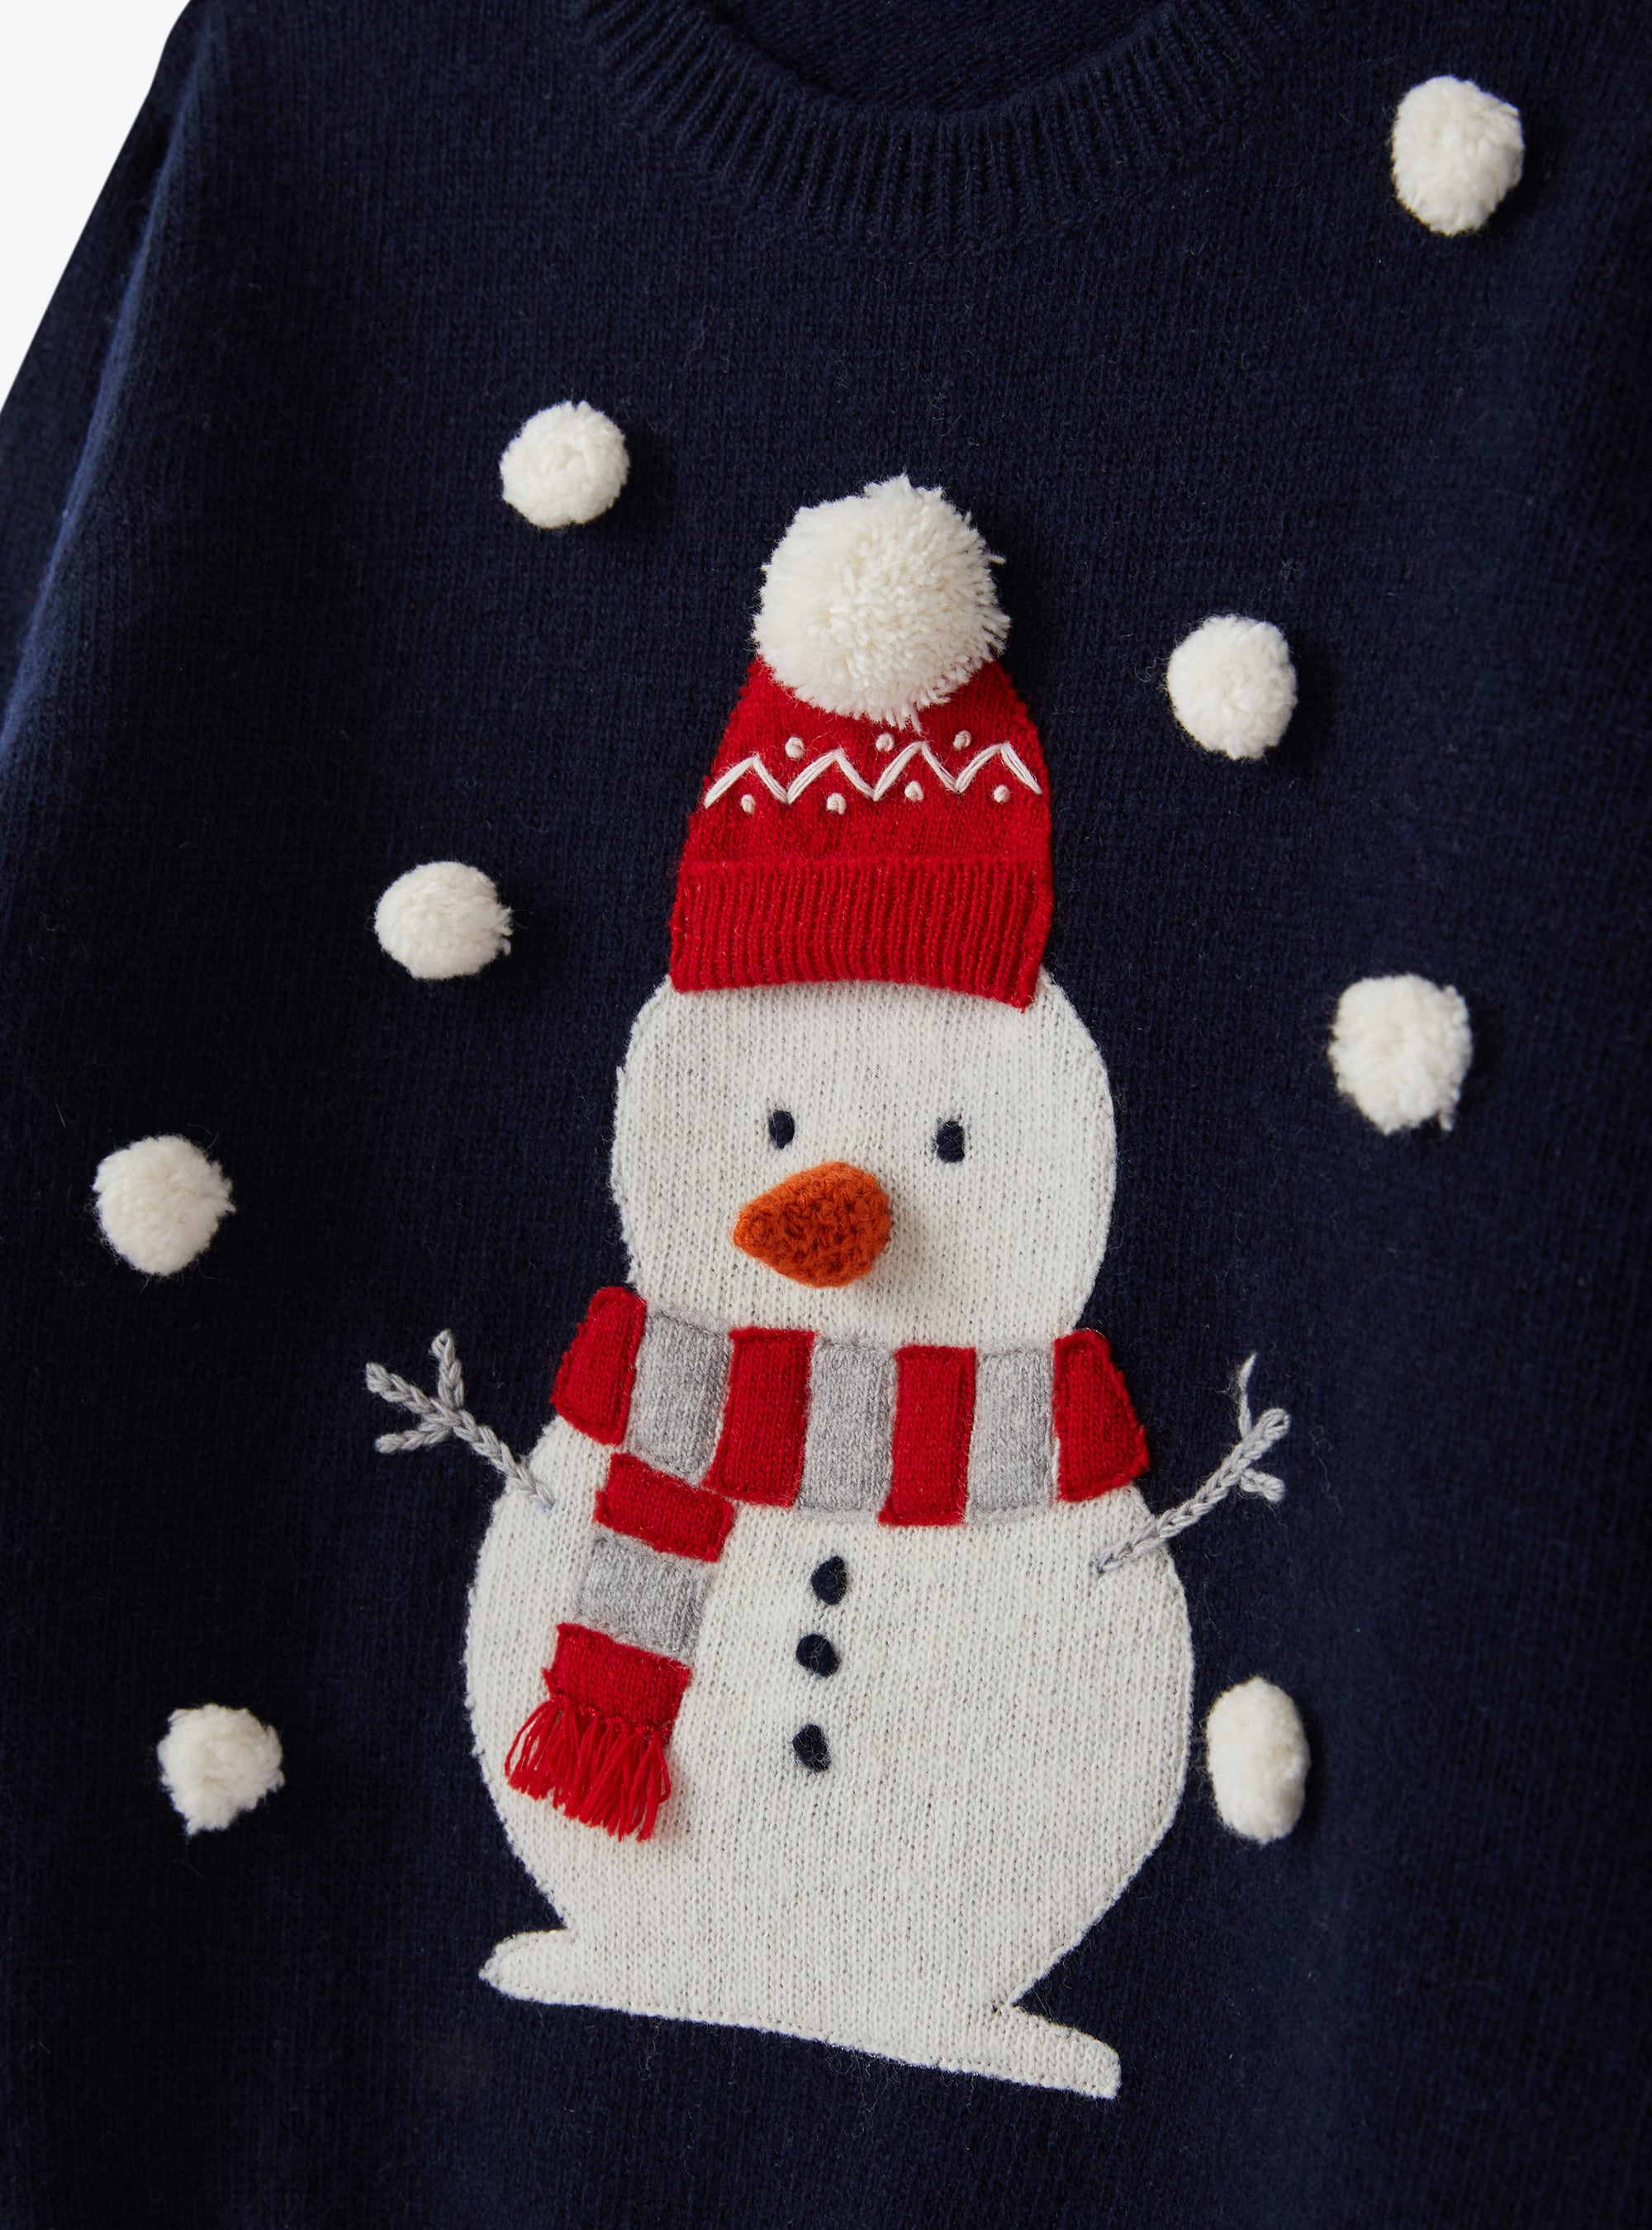 Maglione natalizio con pupazzo di neve - Blu | Il Gufo